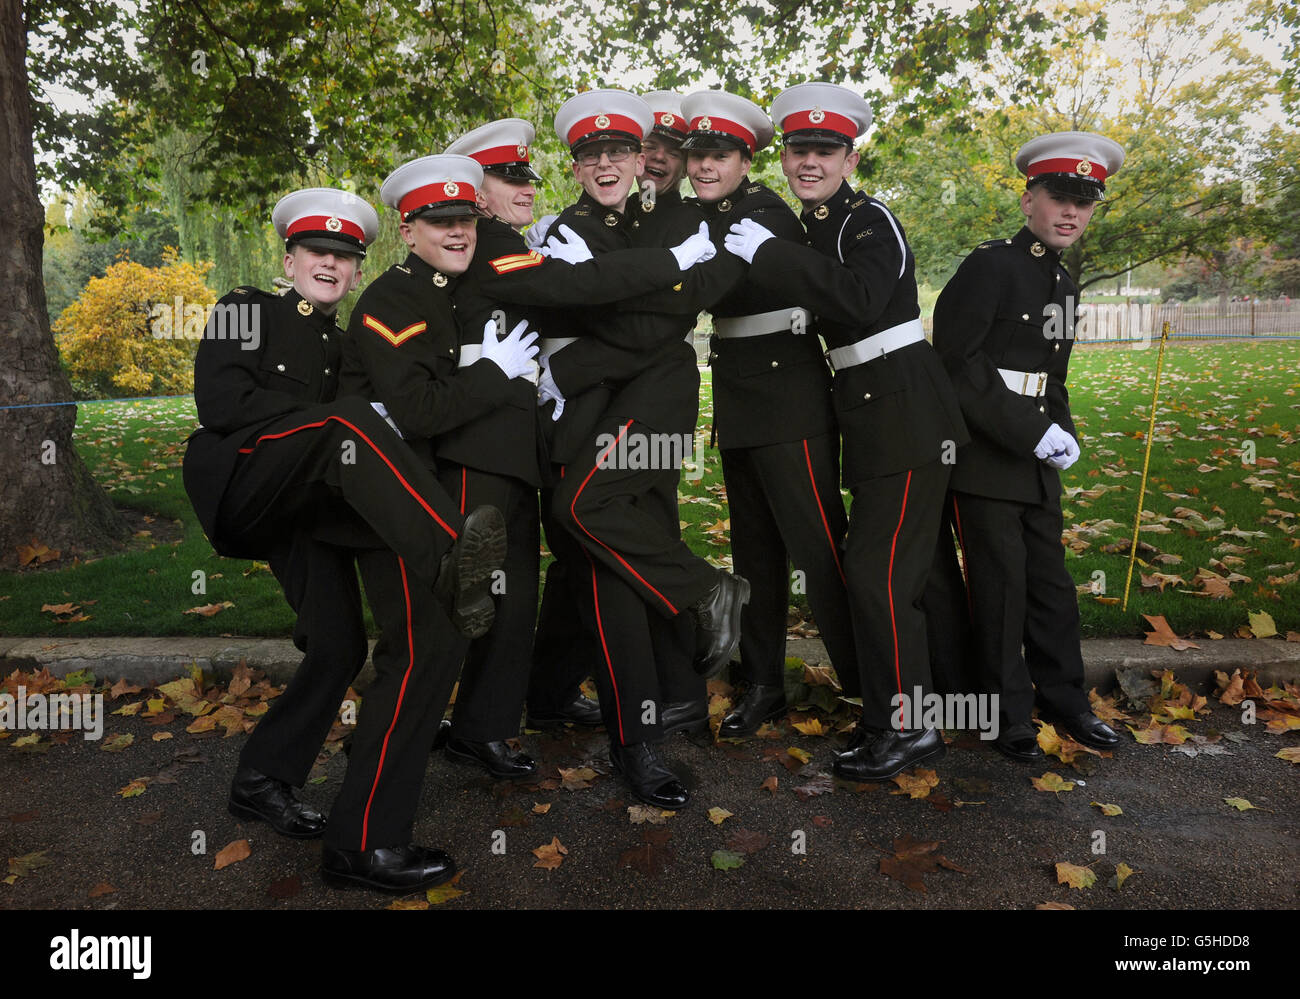 Cadets de la marine de Yankee Company Royal Marine Cadets, dans la région du Nord, avant de prendre part à une parade de la journée de Trafalgar, de Horse Guards Parade Trafalgar Square à Londres. Banque D'Images